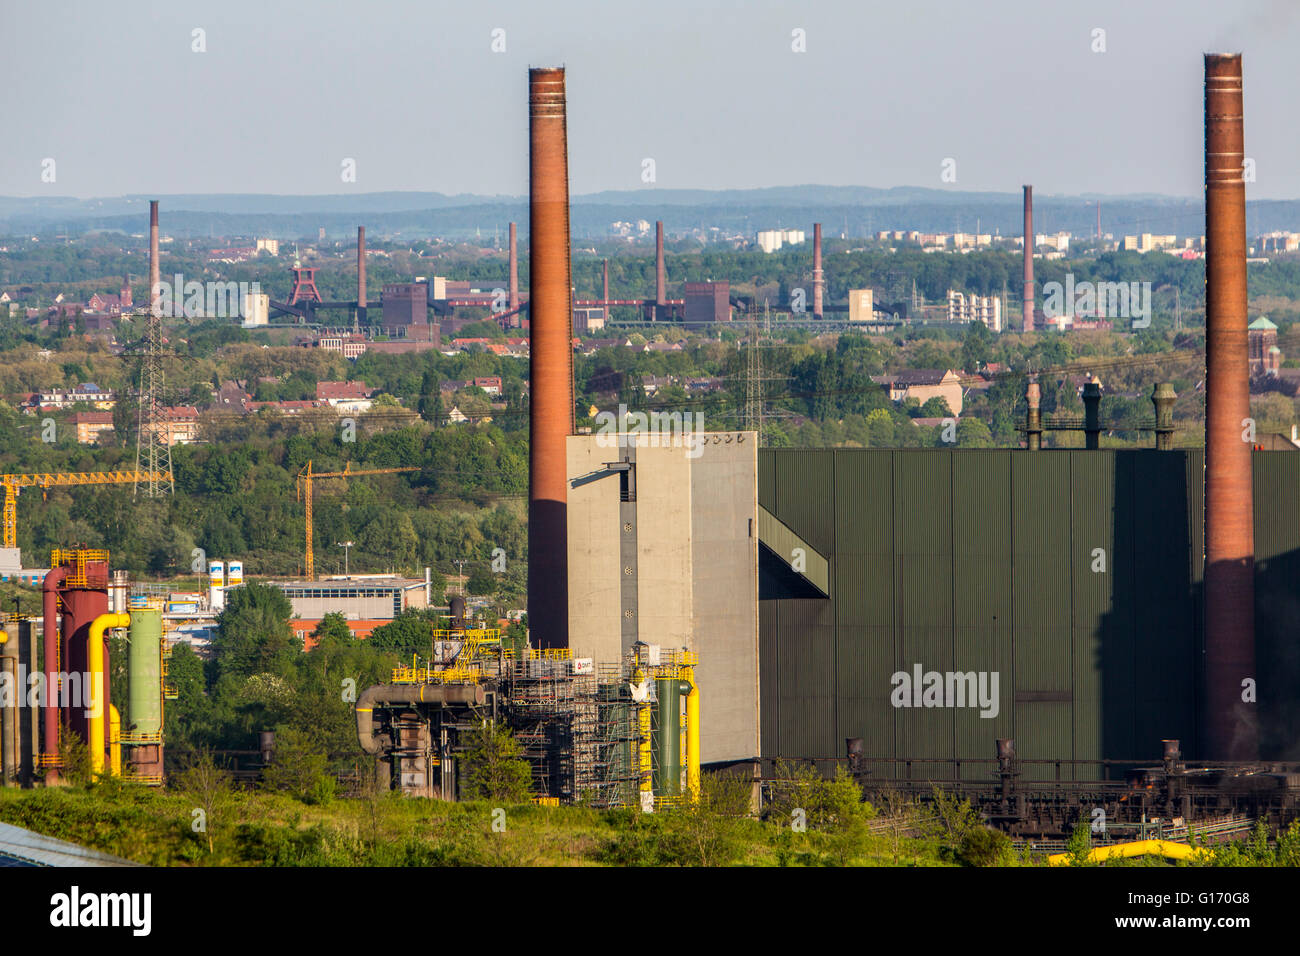 Prosper Kokerei in Bottrop, Deutschland, Teil von ArcelorMittal Industries, Hintergrund-UNESCO-Welterbe Zollverein in Essen Stockfoto